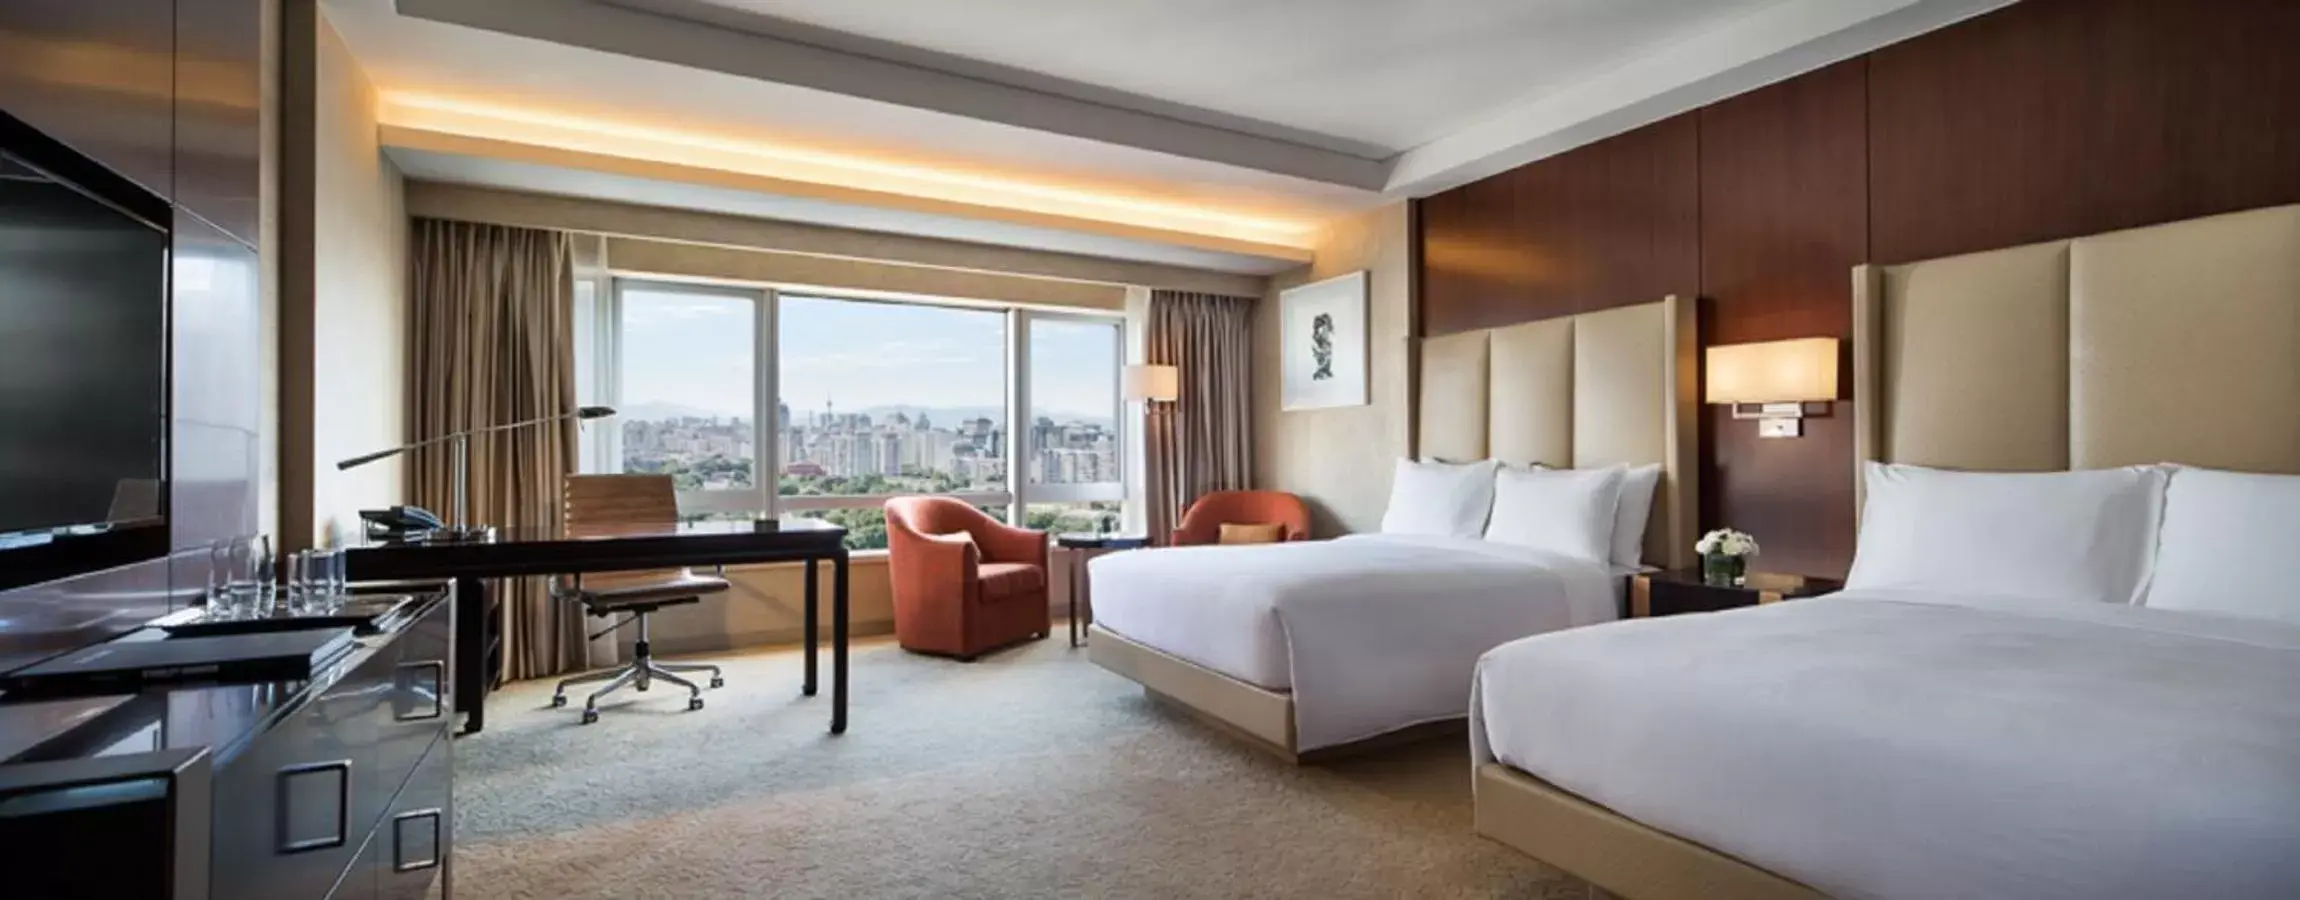 Bedroom in JW Marriott Hotel Beijing Central